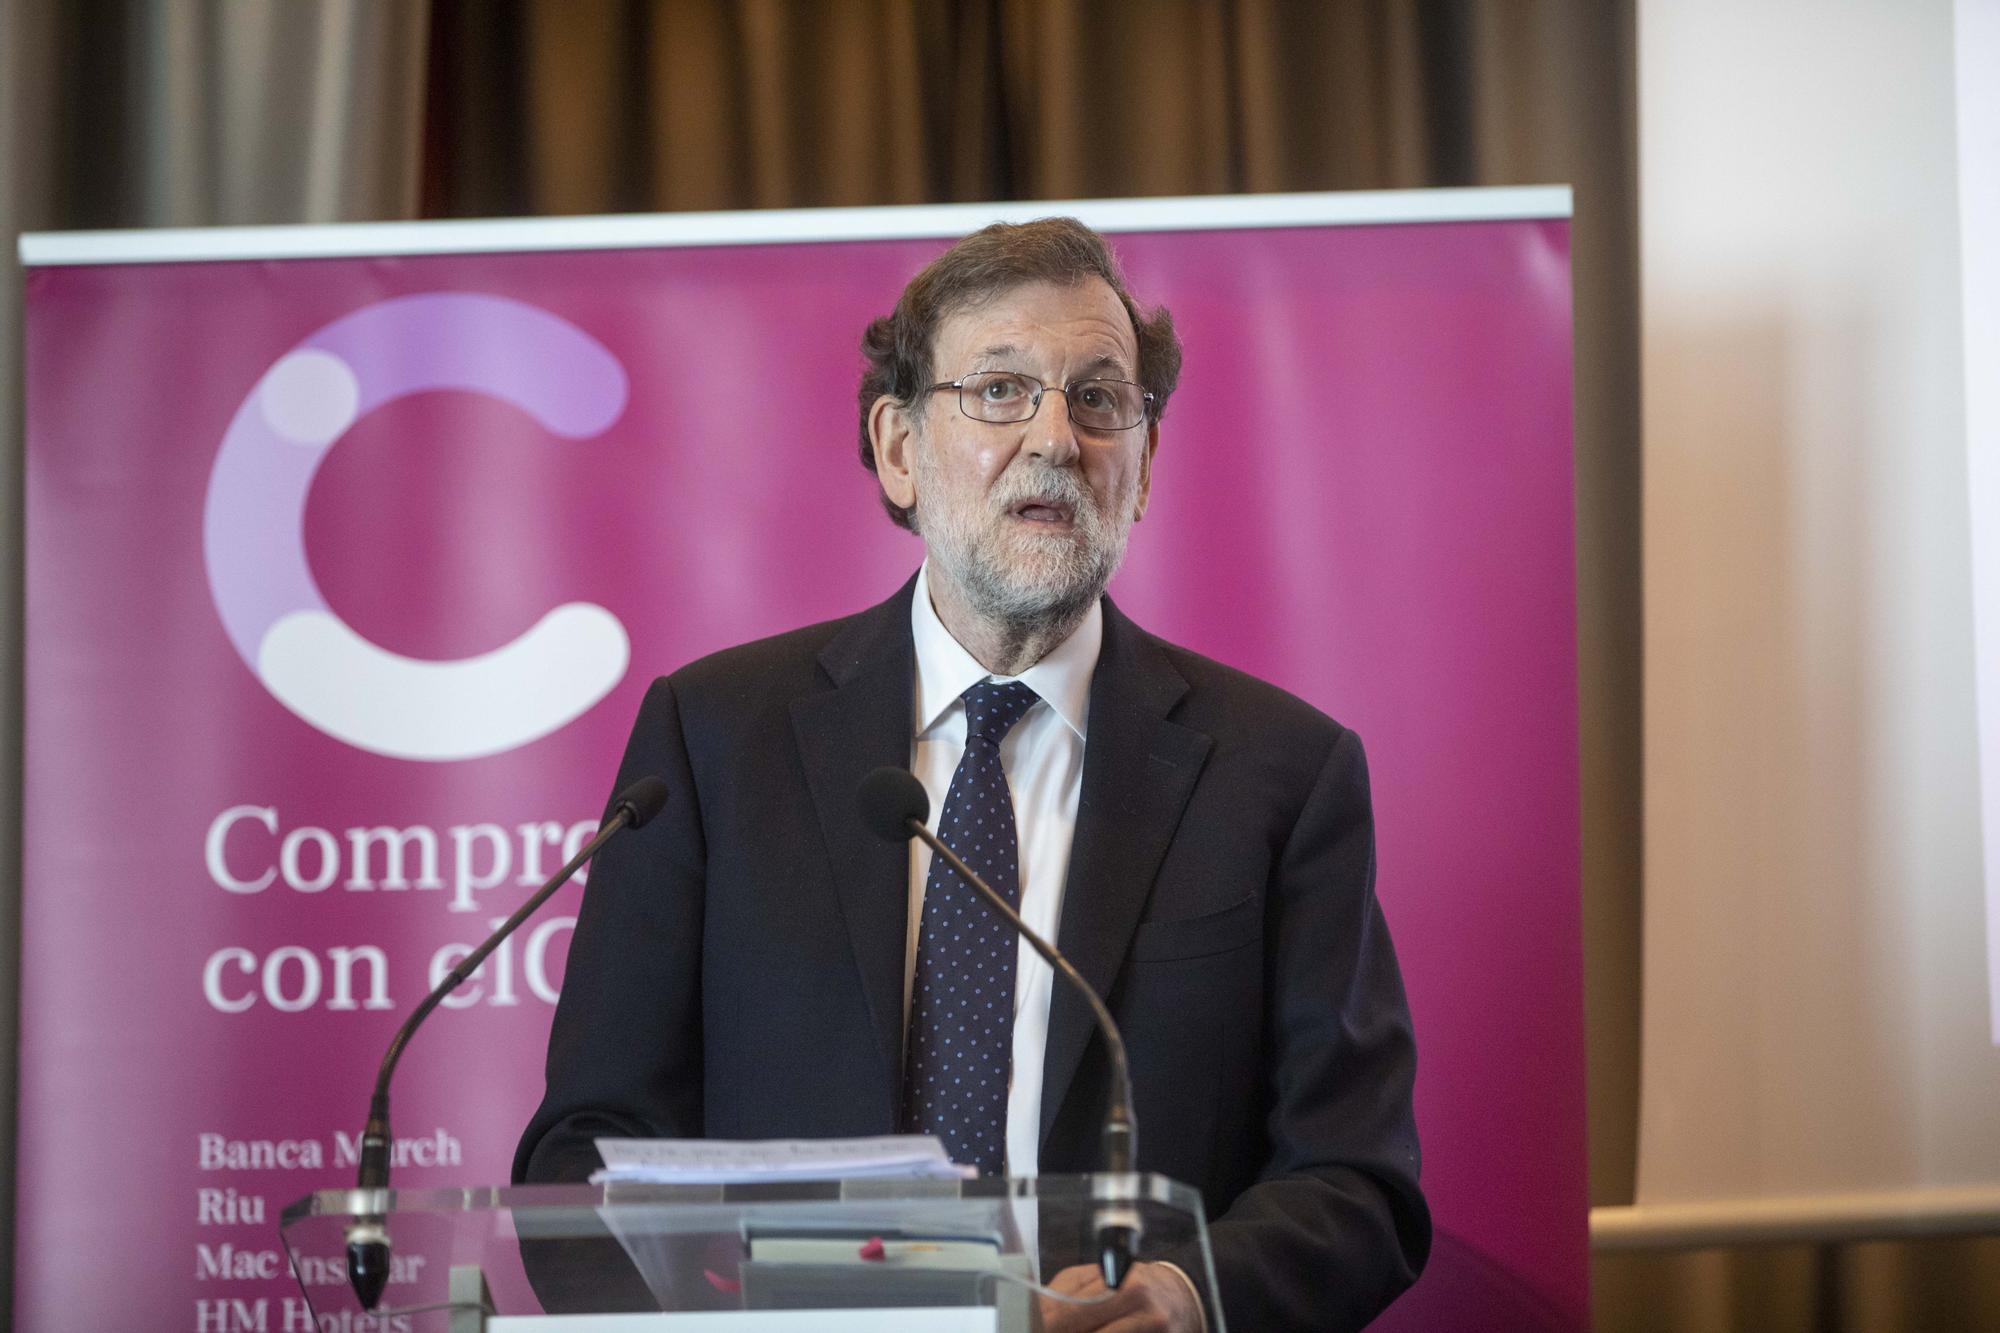 Rajoy, en Palma: "Por fortuna seguimos teniendo bipartidismo y rey"